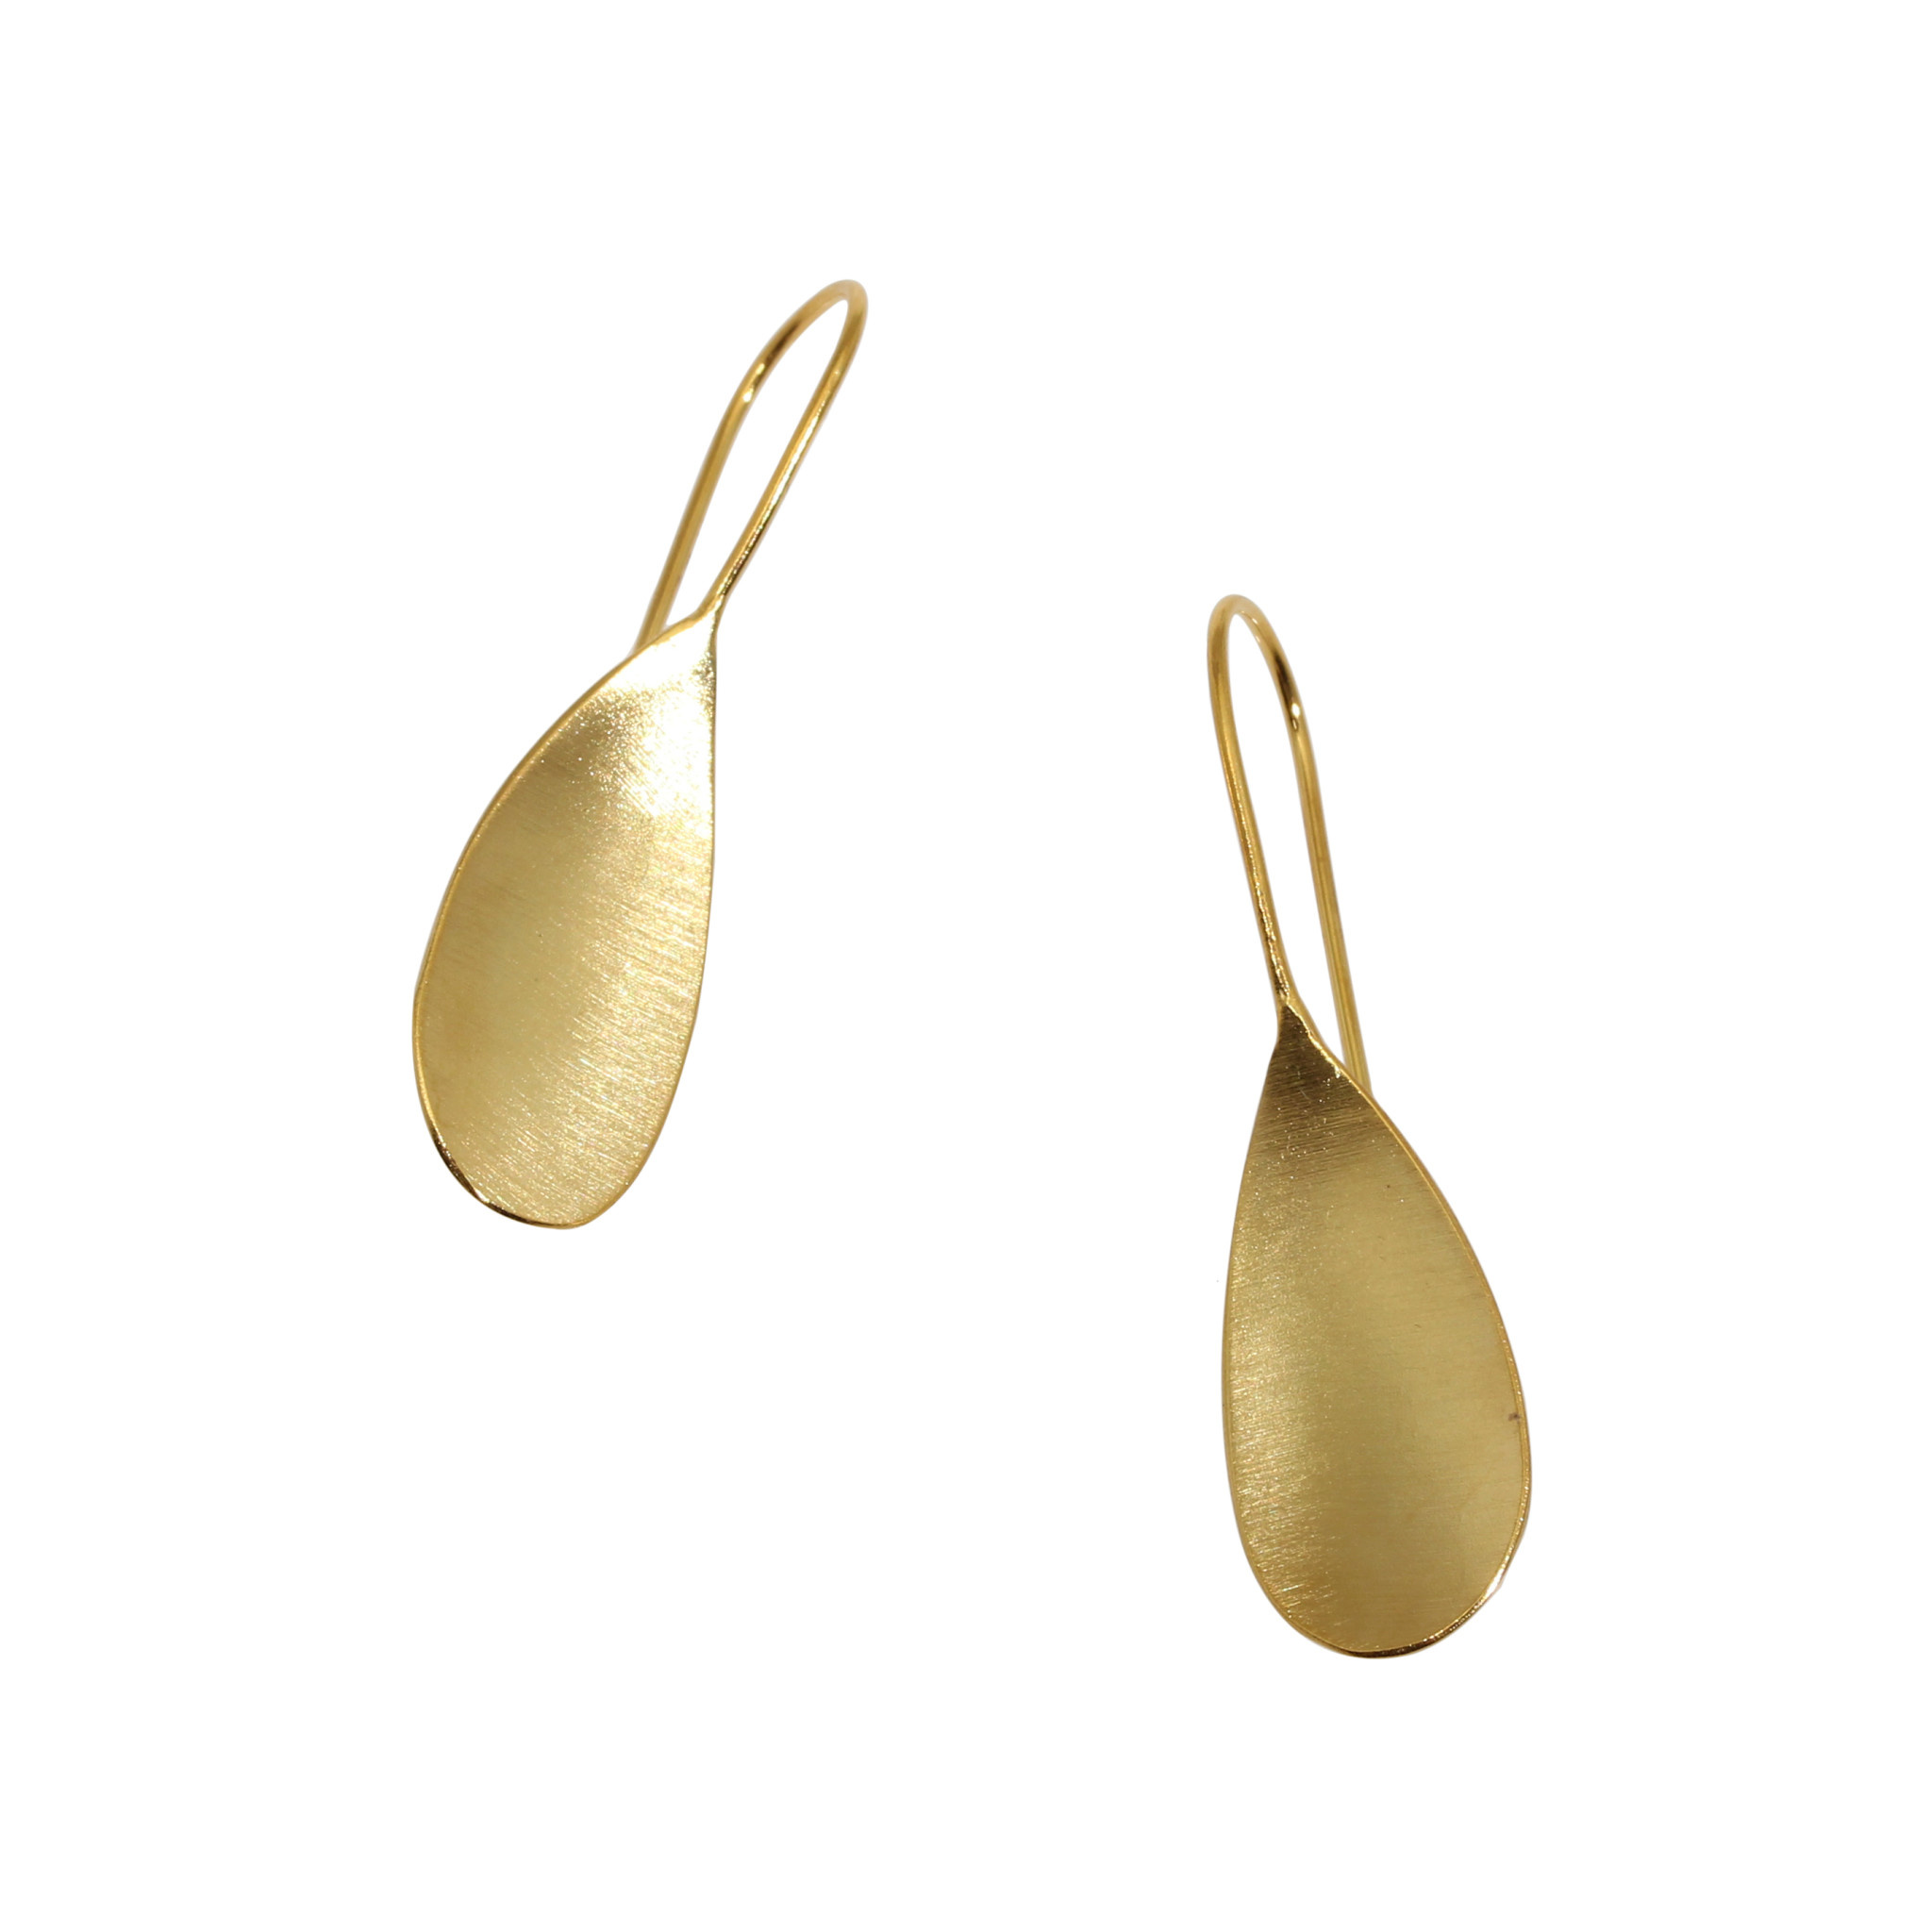 Small Teardrop Earrings in Gold